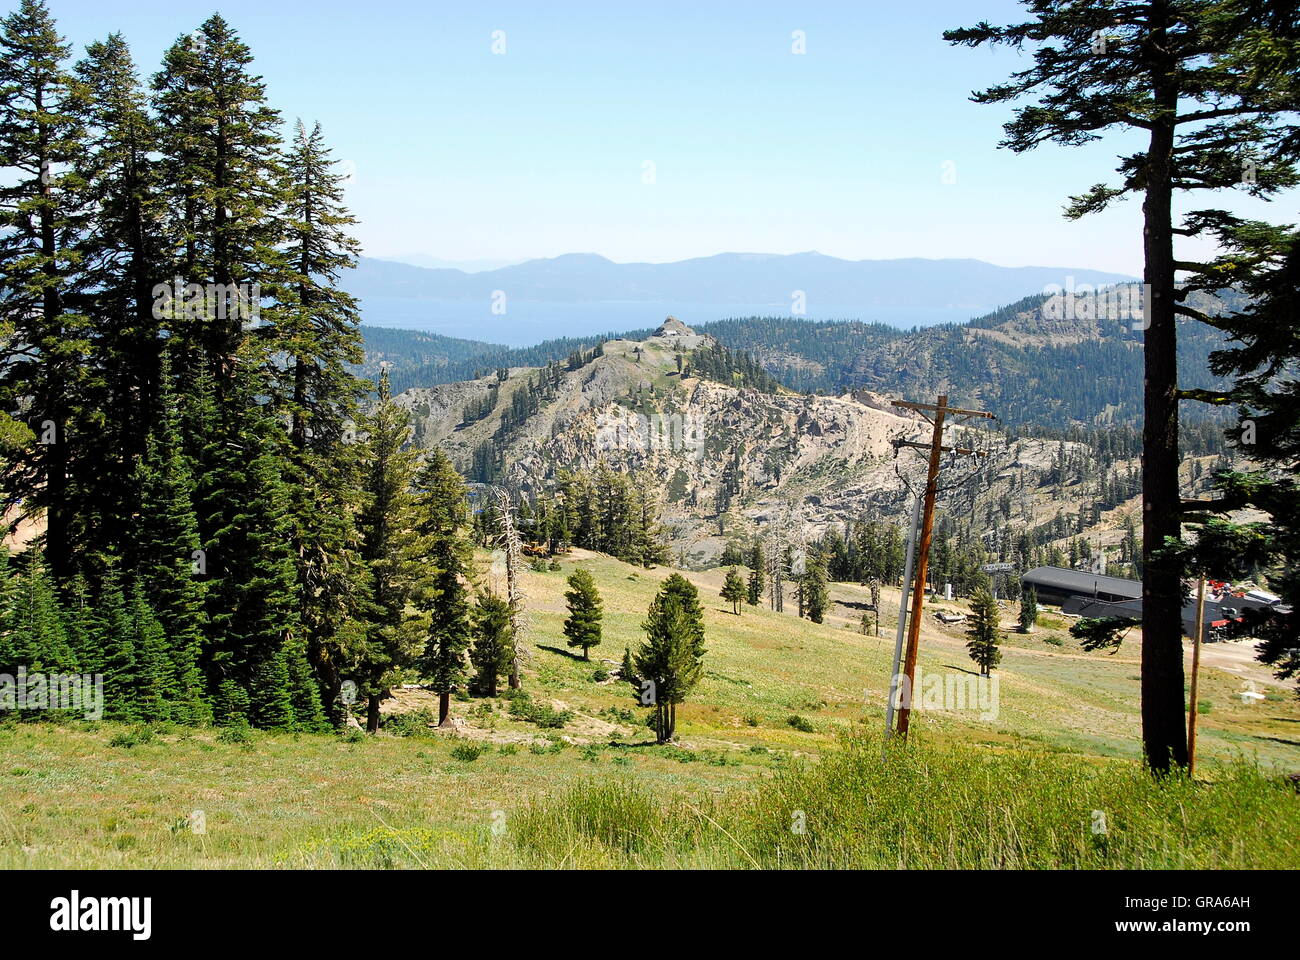 Wandern im Sommer in Squaw Valley Ski Resort bei Olympic Valley, Kalifornien.  Ansicht von KT-22 und Hochlager Stockfoto